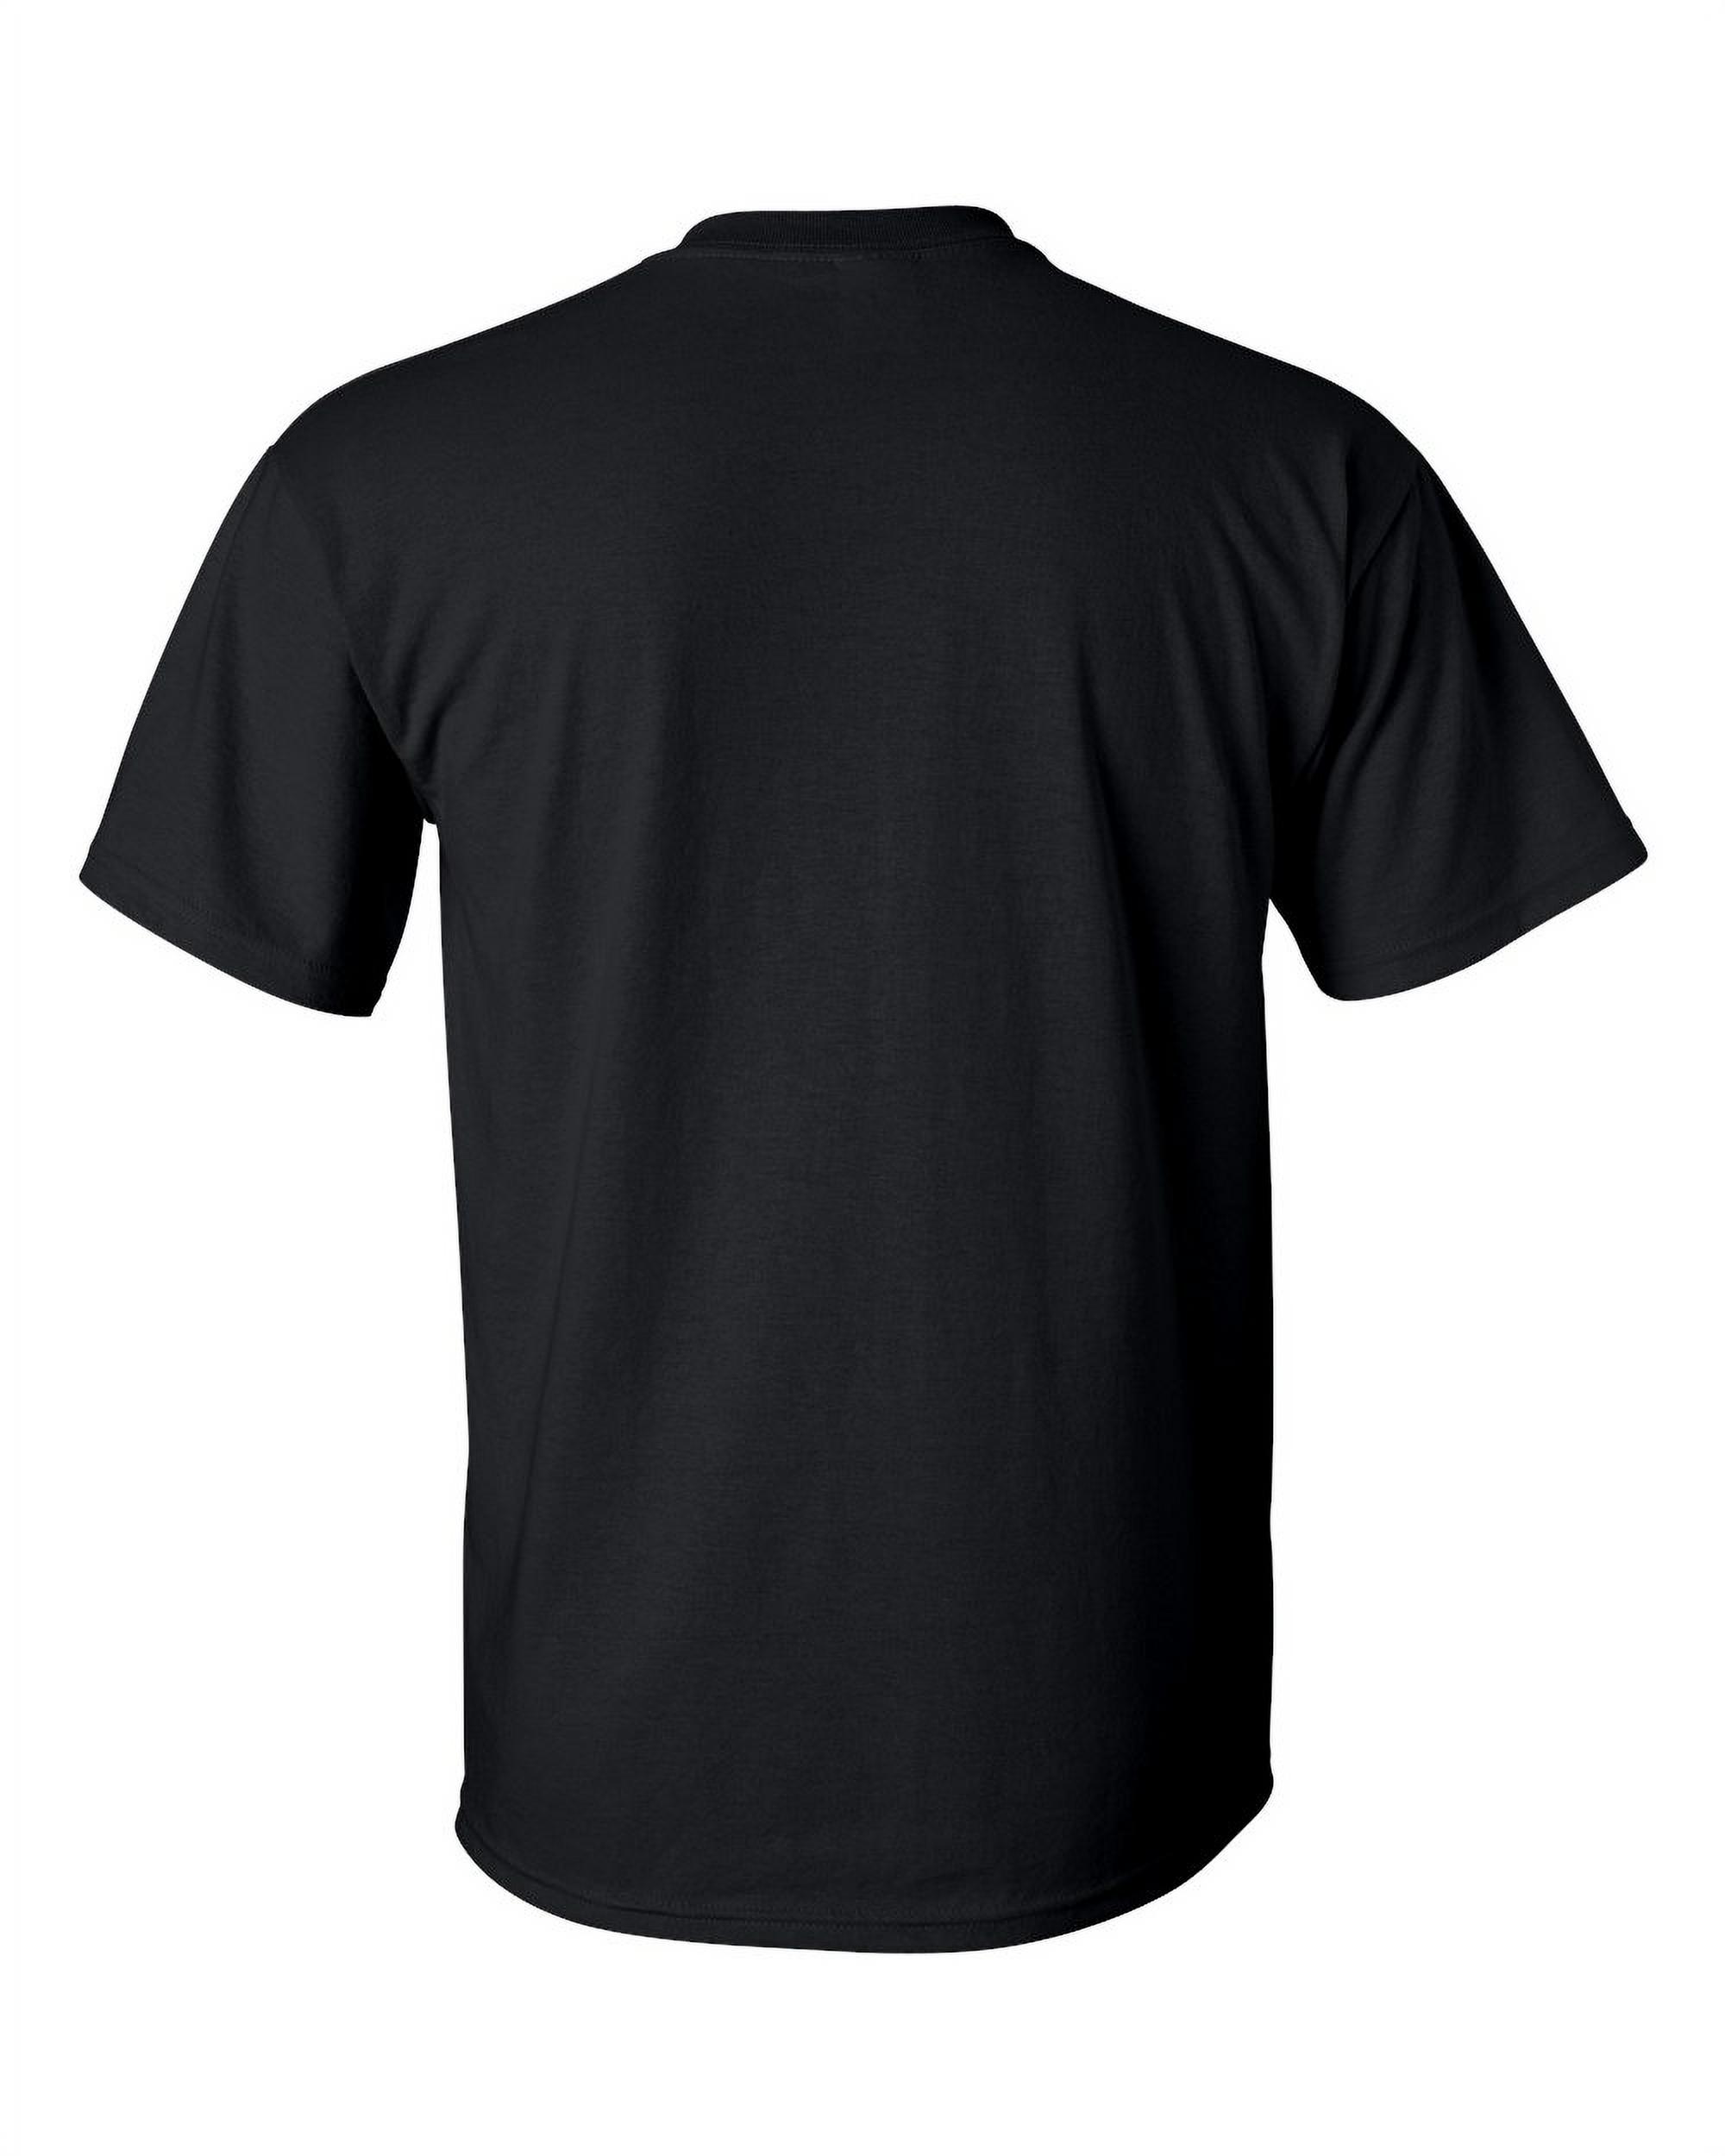 Big Men's T-Shirt - Dallas - image 4 of 5